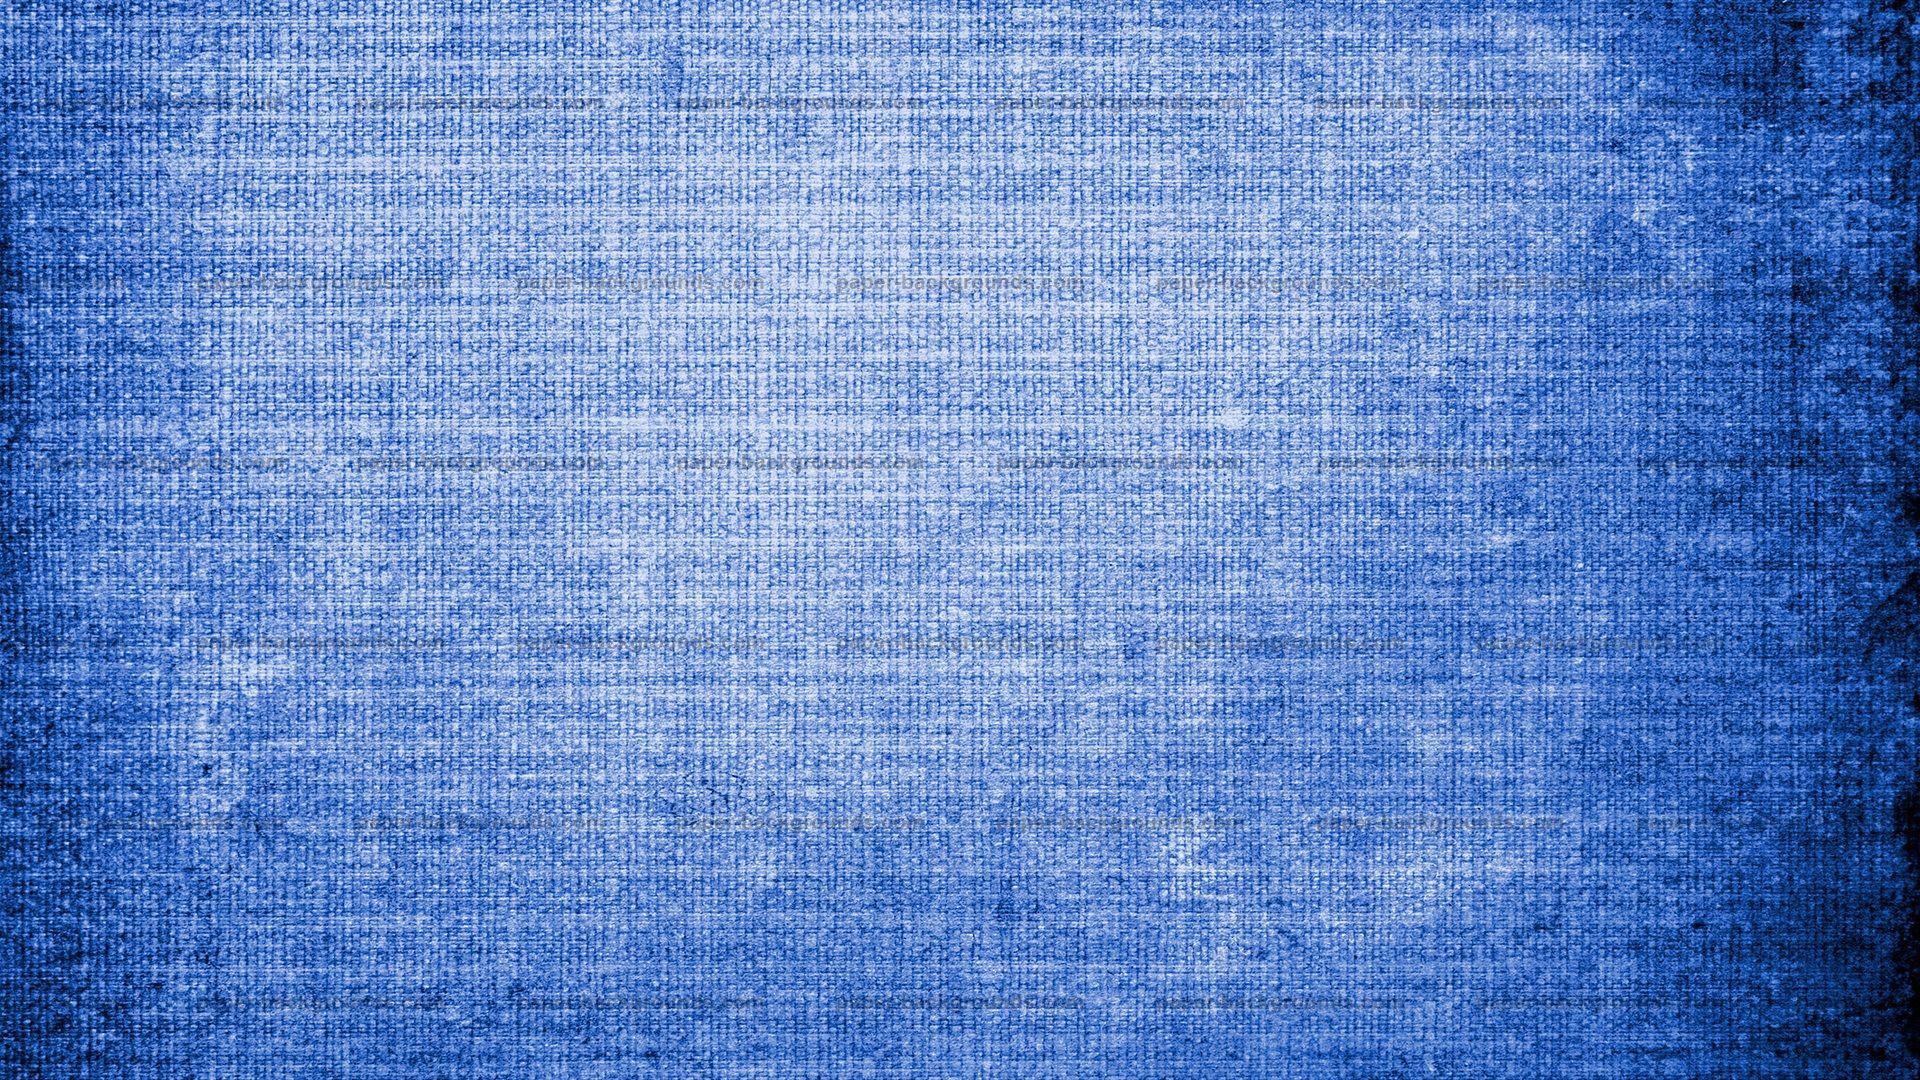 Góc nào cũng đẹp với hình nền Vintage Blue Texture Wallpapers. Với những vân vânđáng độc đáo, hoa văn vintage, khung hình của bạn sẽ trở nên độc đáo và vô cùng thu hút mọi ánh nhìn. Chỉ cần vài thao tác đơn giản, bạn đã sở hữu một không gian mới mẻ và độc đáo cho riêng mình.